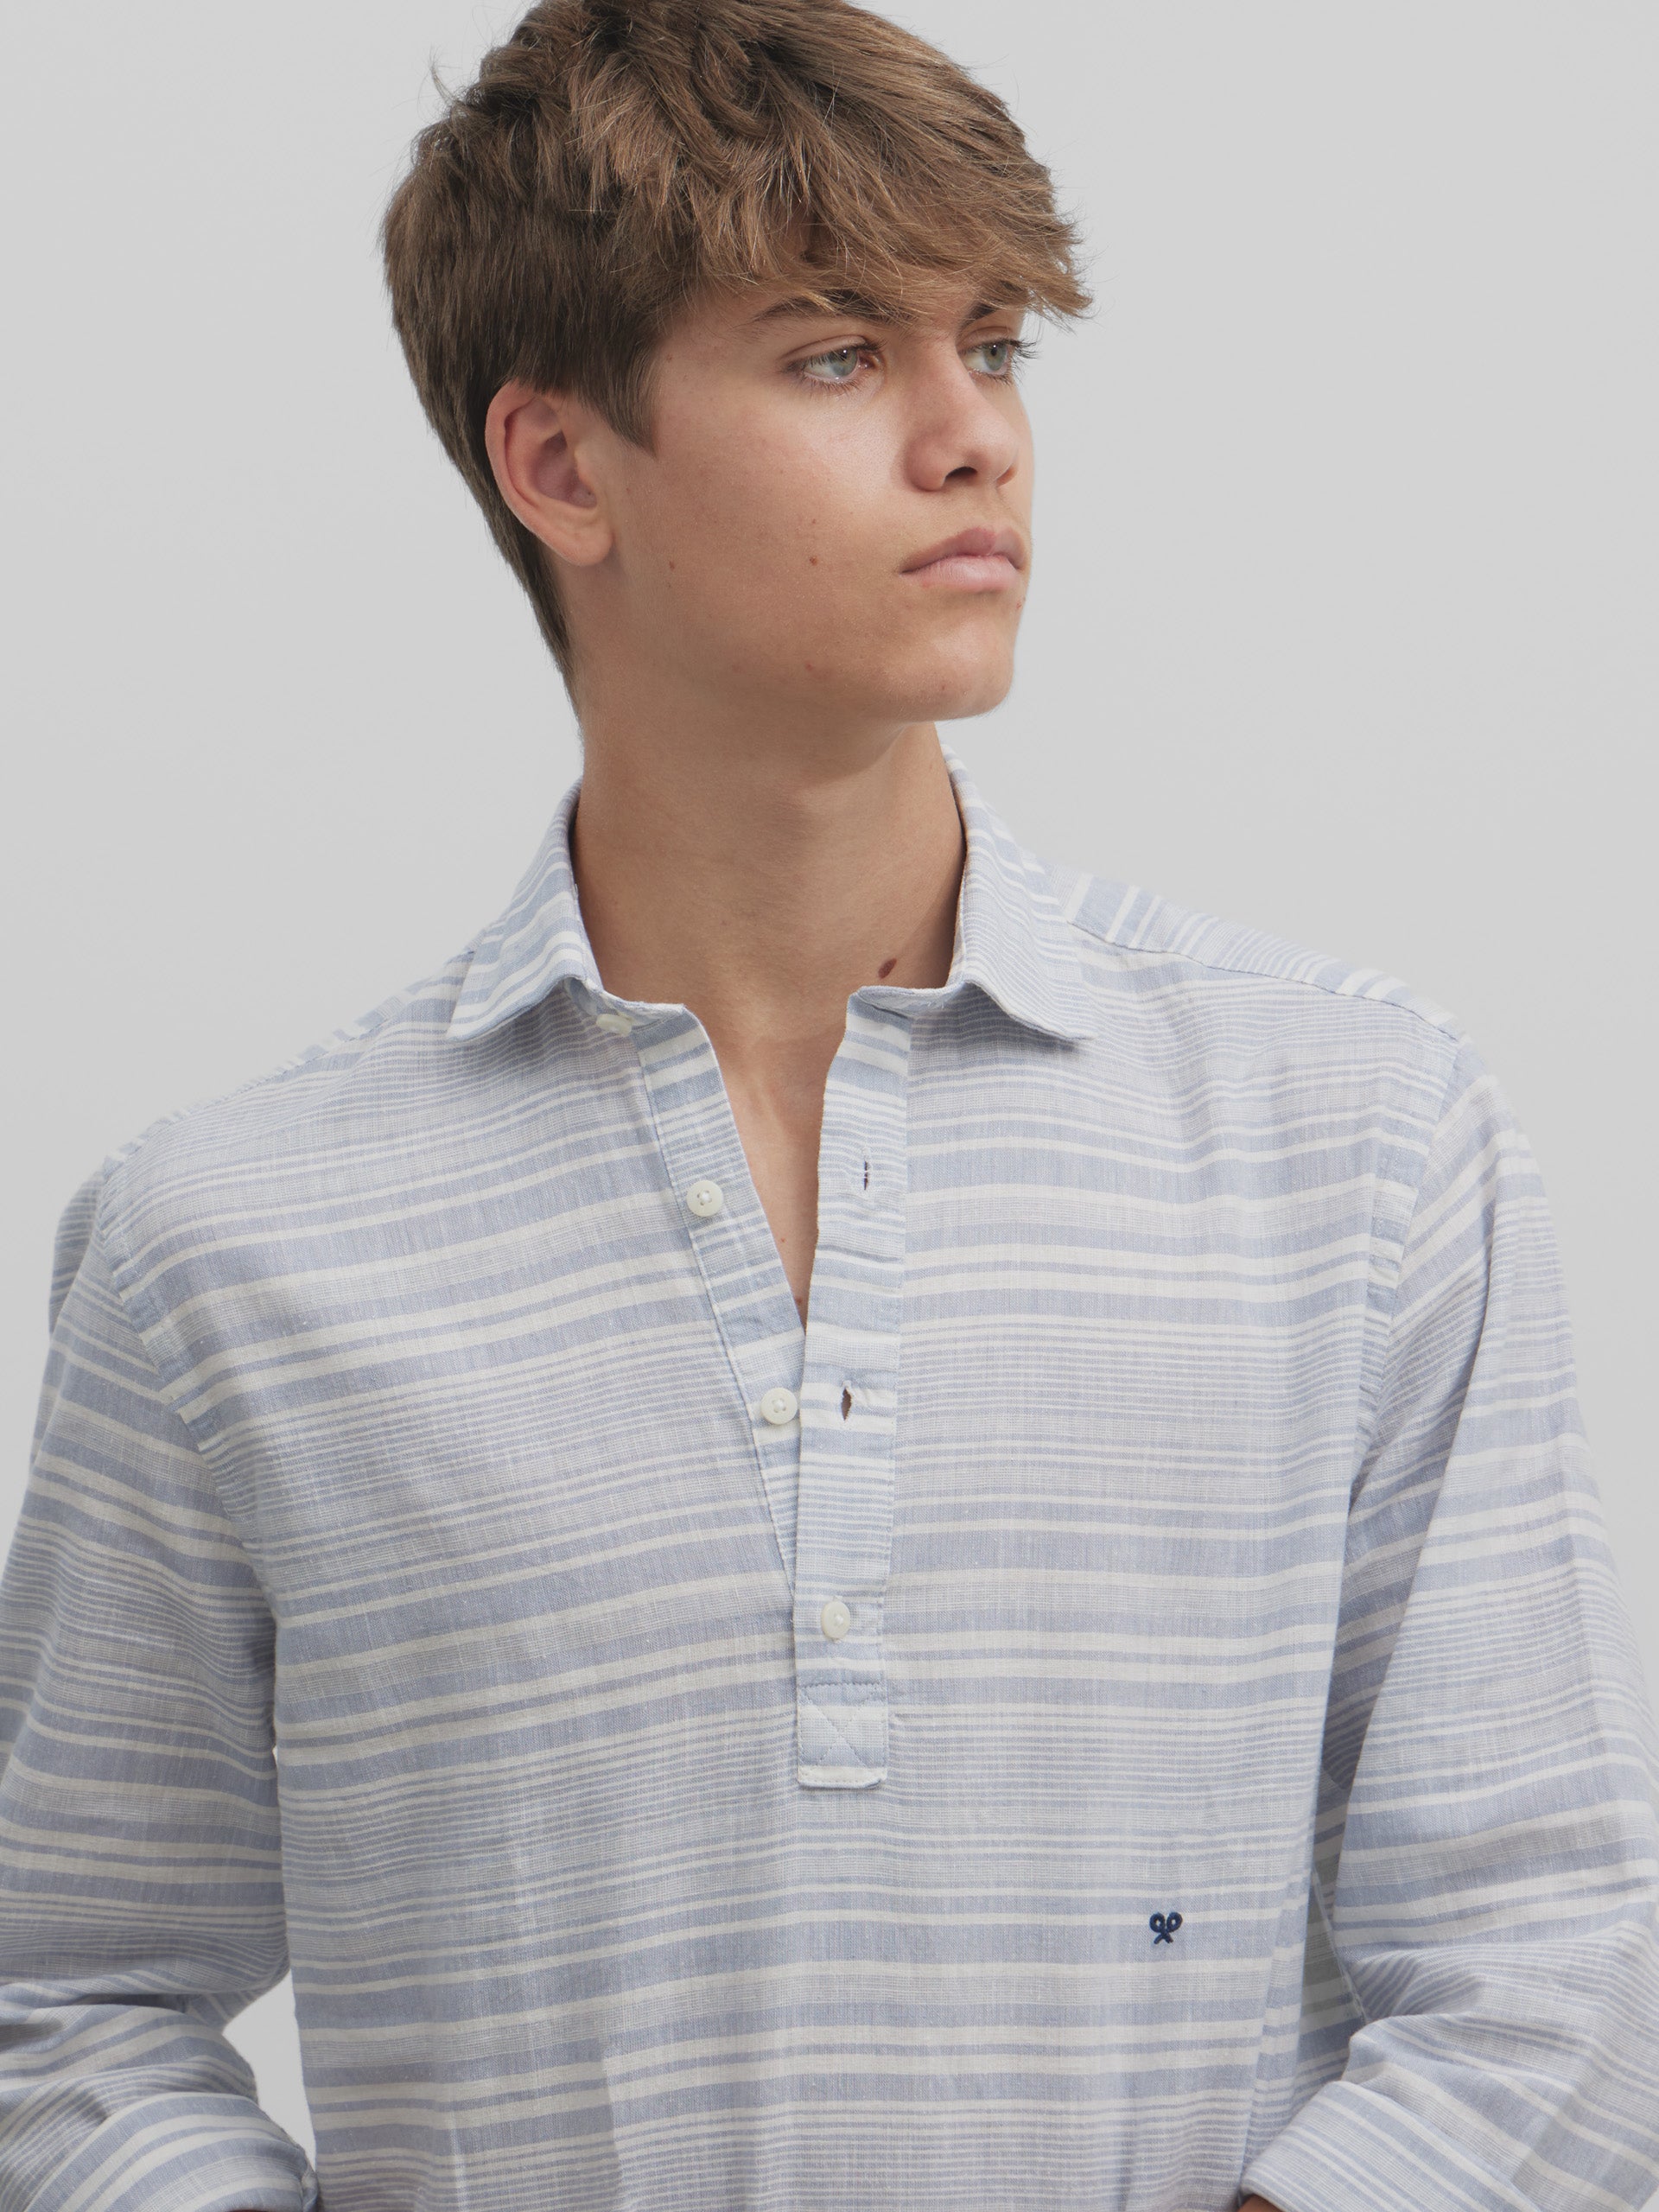 Silbon soft sport t-shirt with irregular blue stripes